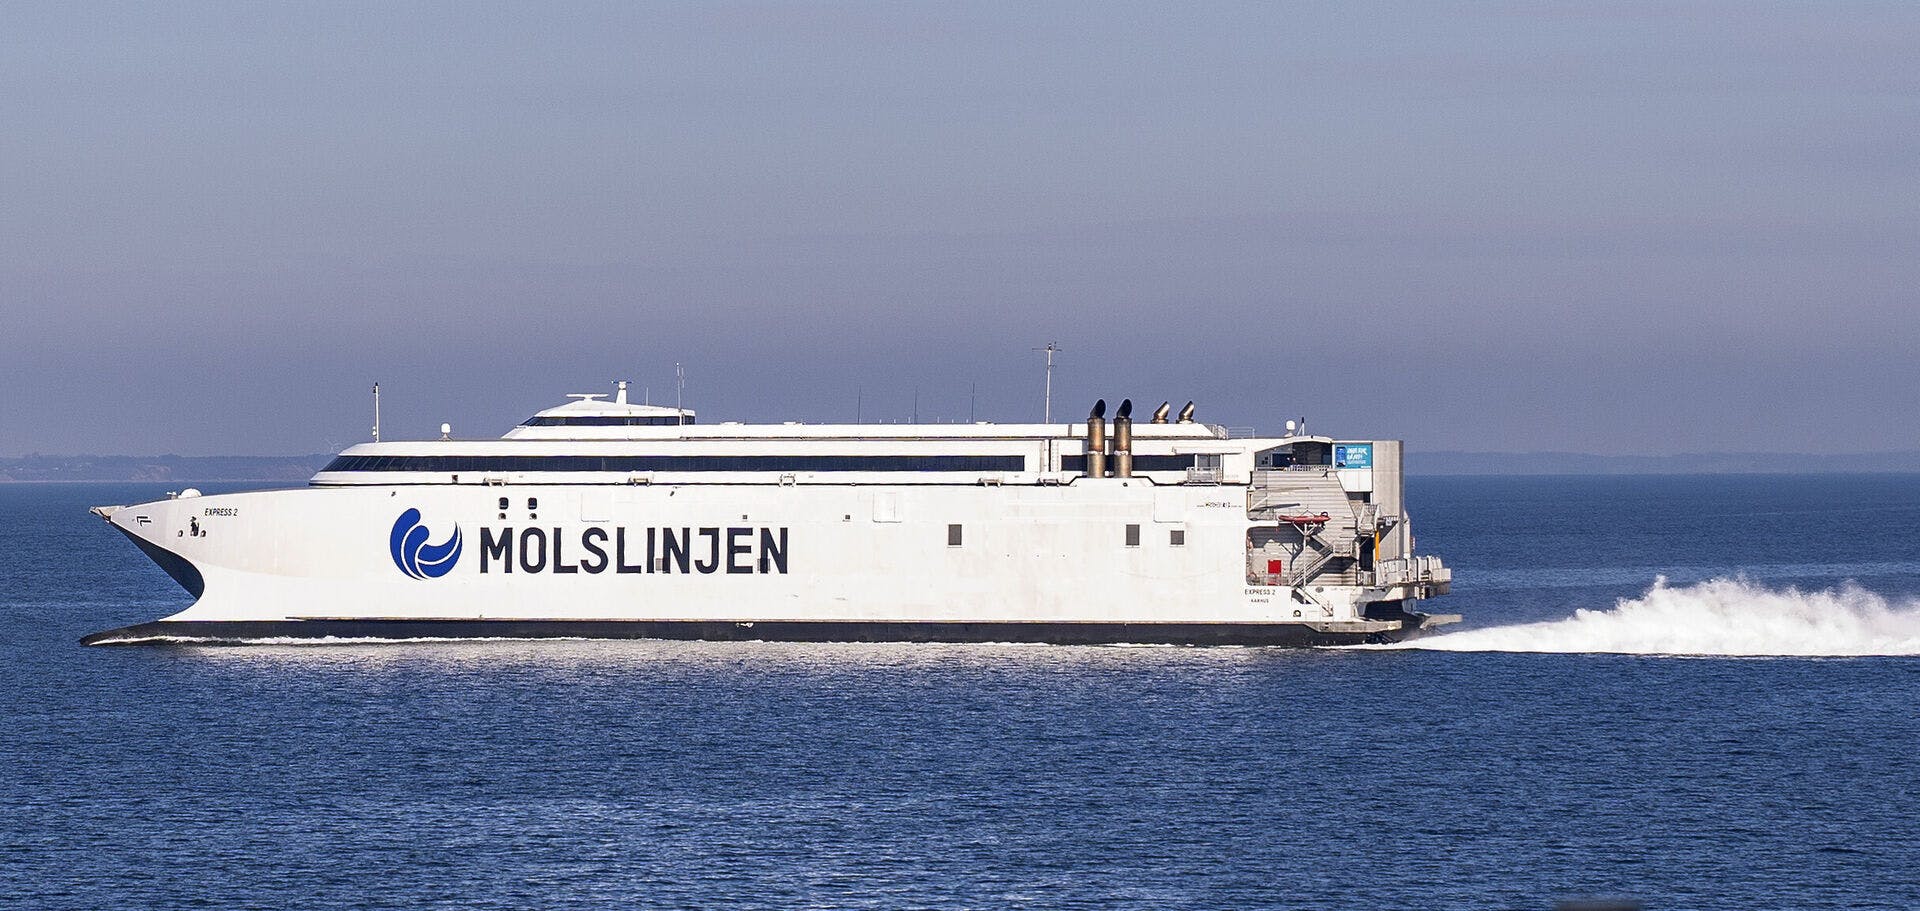 Molslinjen, Express 2 færge på Kattegat, 9. marts 2021.